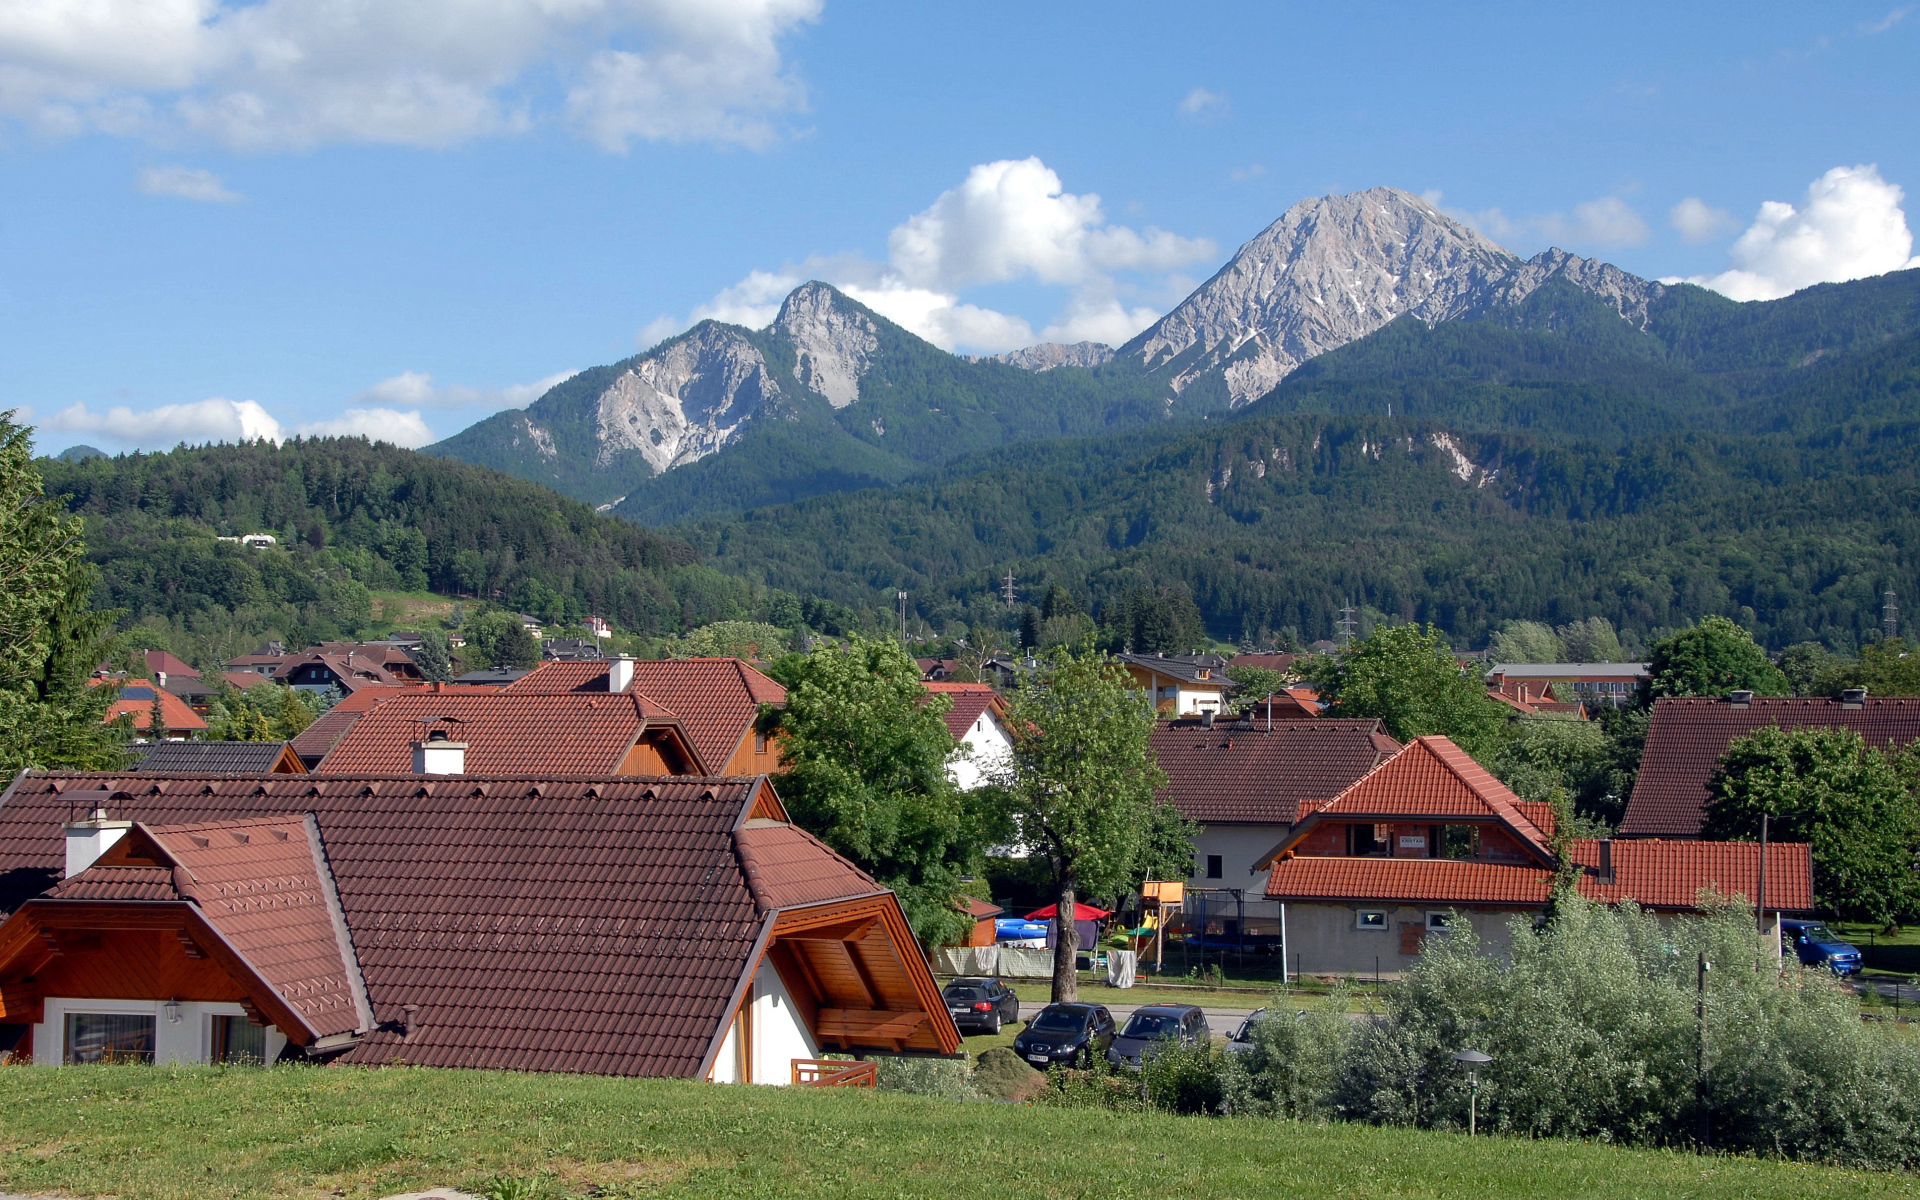 Панорама города на курорте Фаакер-Зее, Австрия